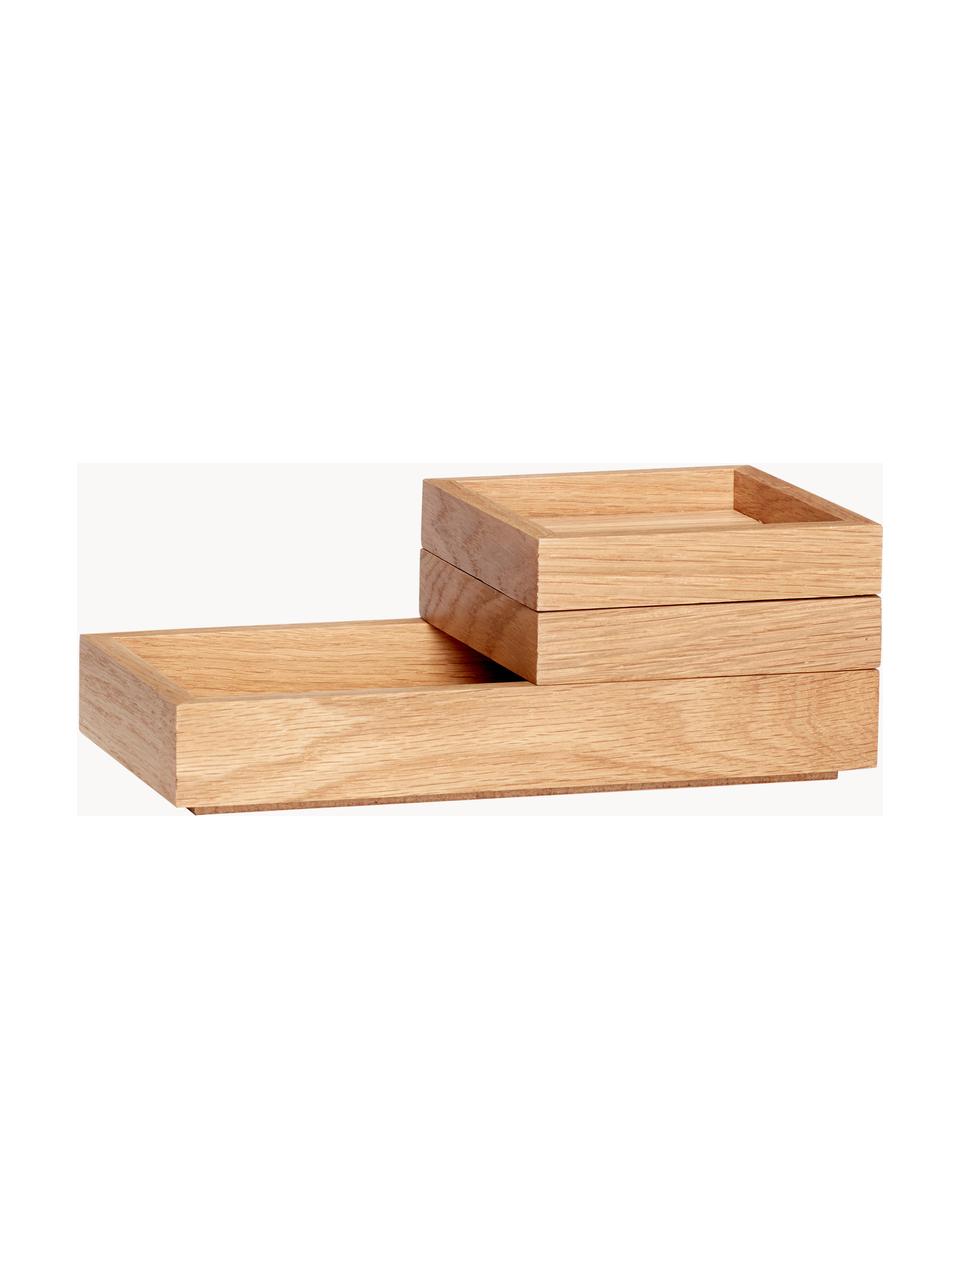 Stapelbares Aufbewahrungsboxen-Set Klara, 3-tlg., Eichenholzfurnier, Eichenholz, FSC-zertifiziert, Eichenholz, Set in verschiedenen Größen